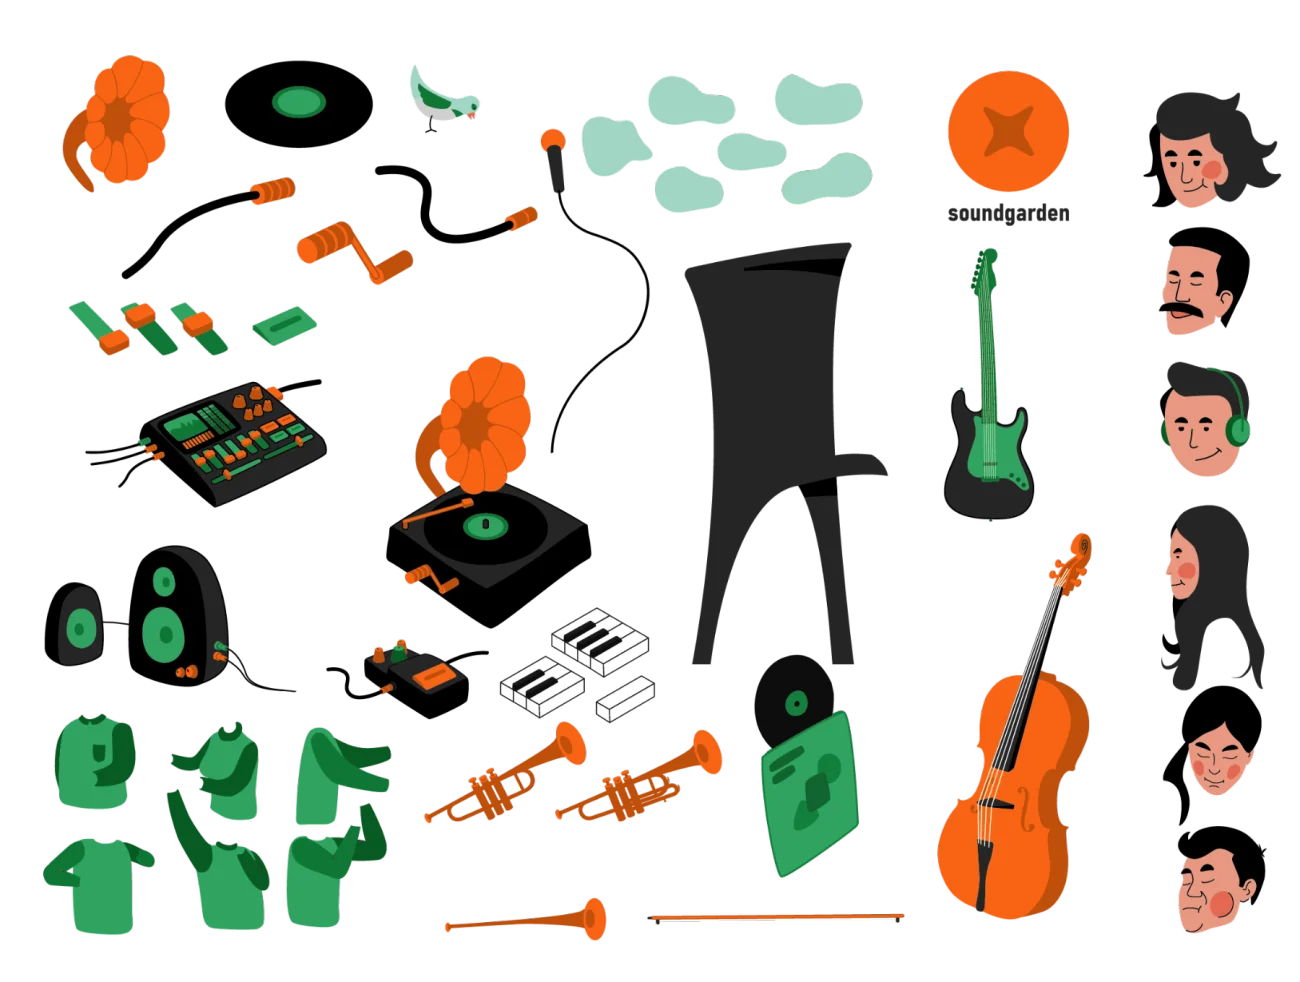 12款现代扁平化人物演奏音乐插图素材 Music illustrations插图13